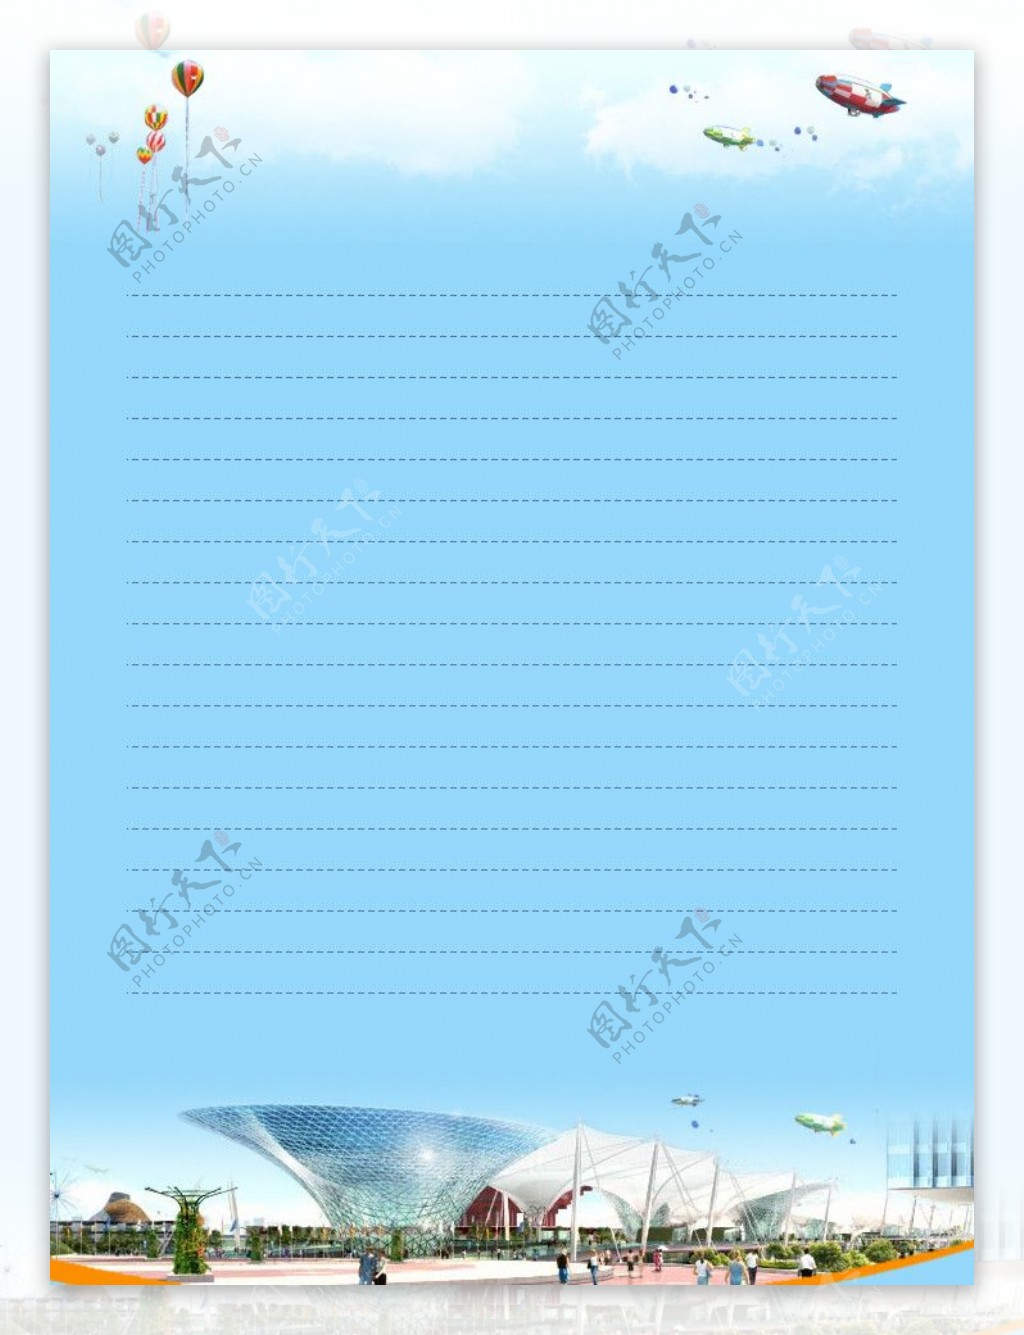 上海世博会背景信纸图片